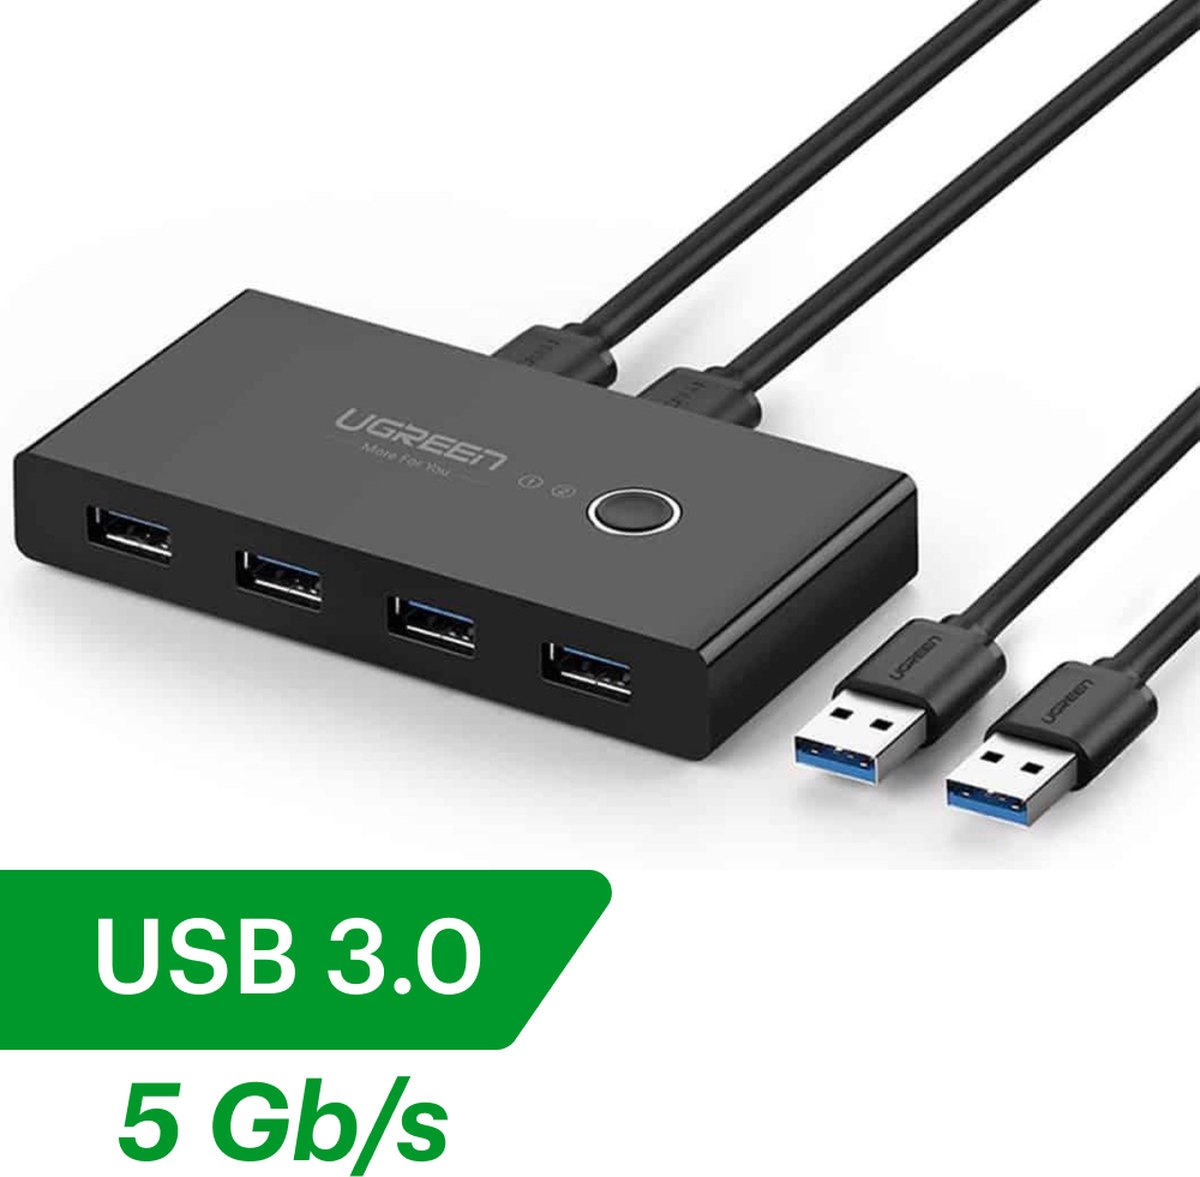 USB 3.0 Switch,commutateur USB bidirectionnel 2 en 1 sortie/1 en 2